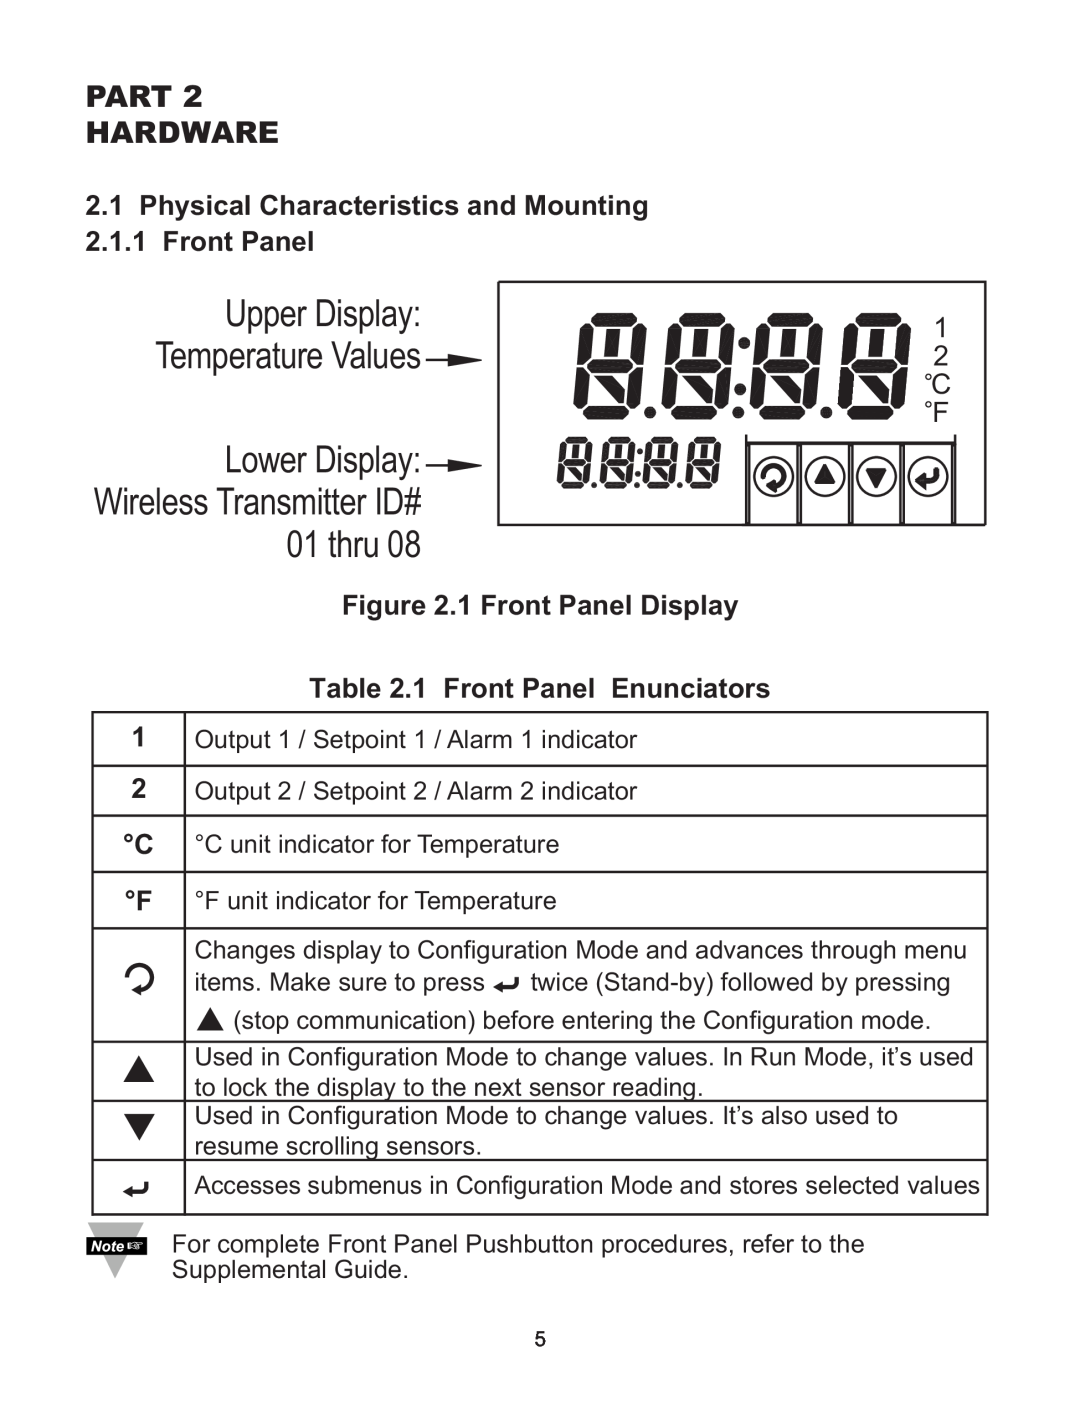 Omega WI8XX-U manual Lower Display Wireless Transmitter ID# 01 thru, Upper Display Temperature Values, Part Hardware 